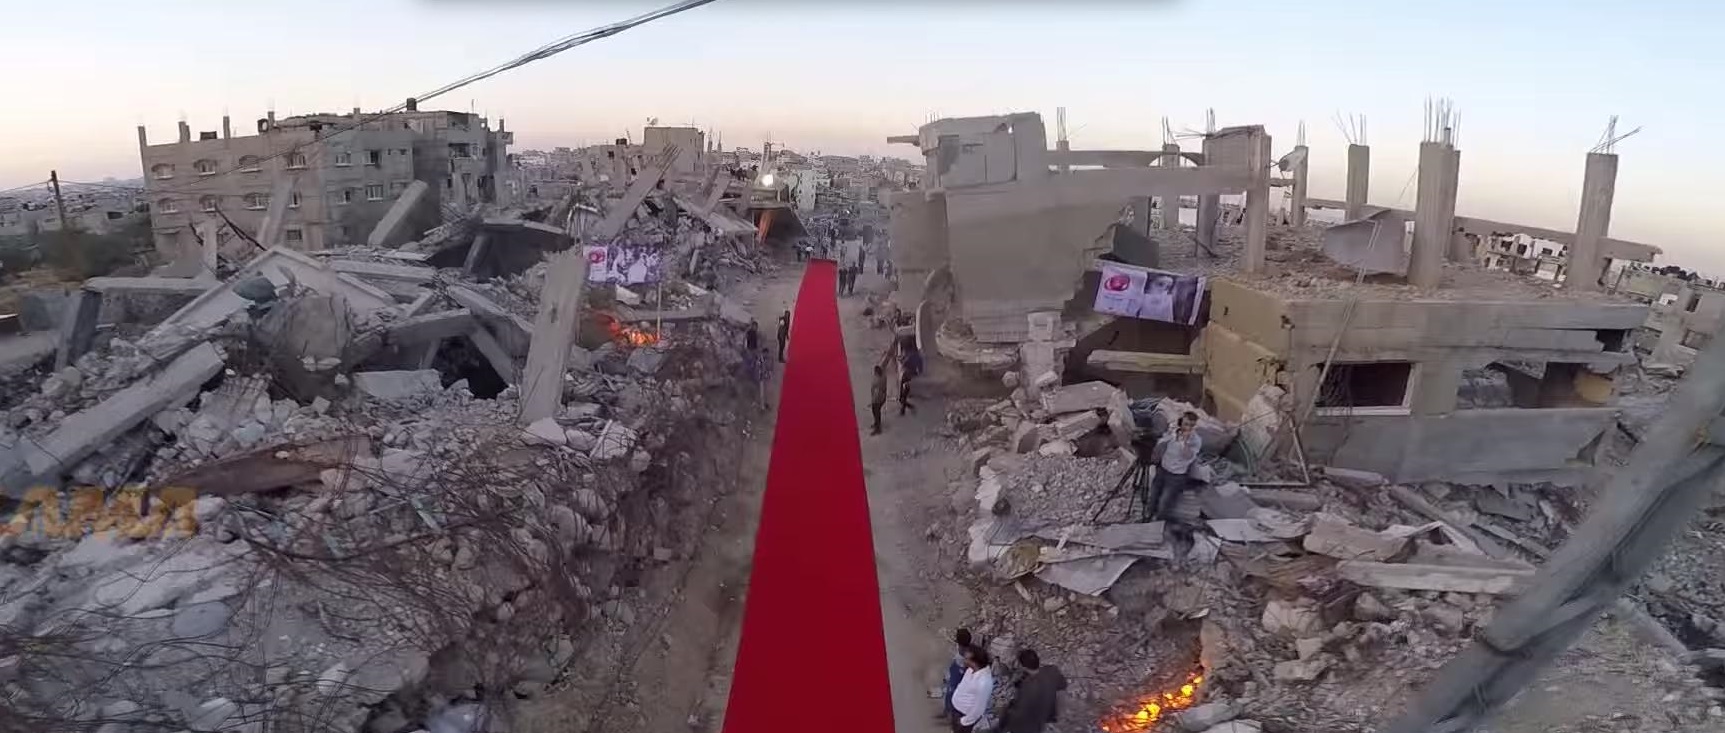 El vídeo es el promocional del Festival de Cine y Derechos Humanos Karama-Gaza (Red Carpet).